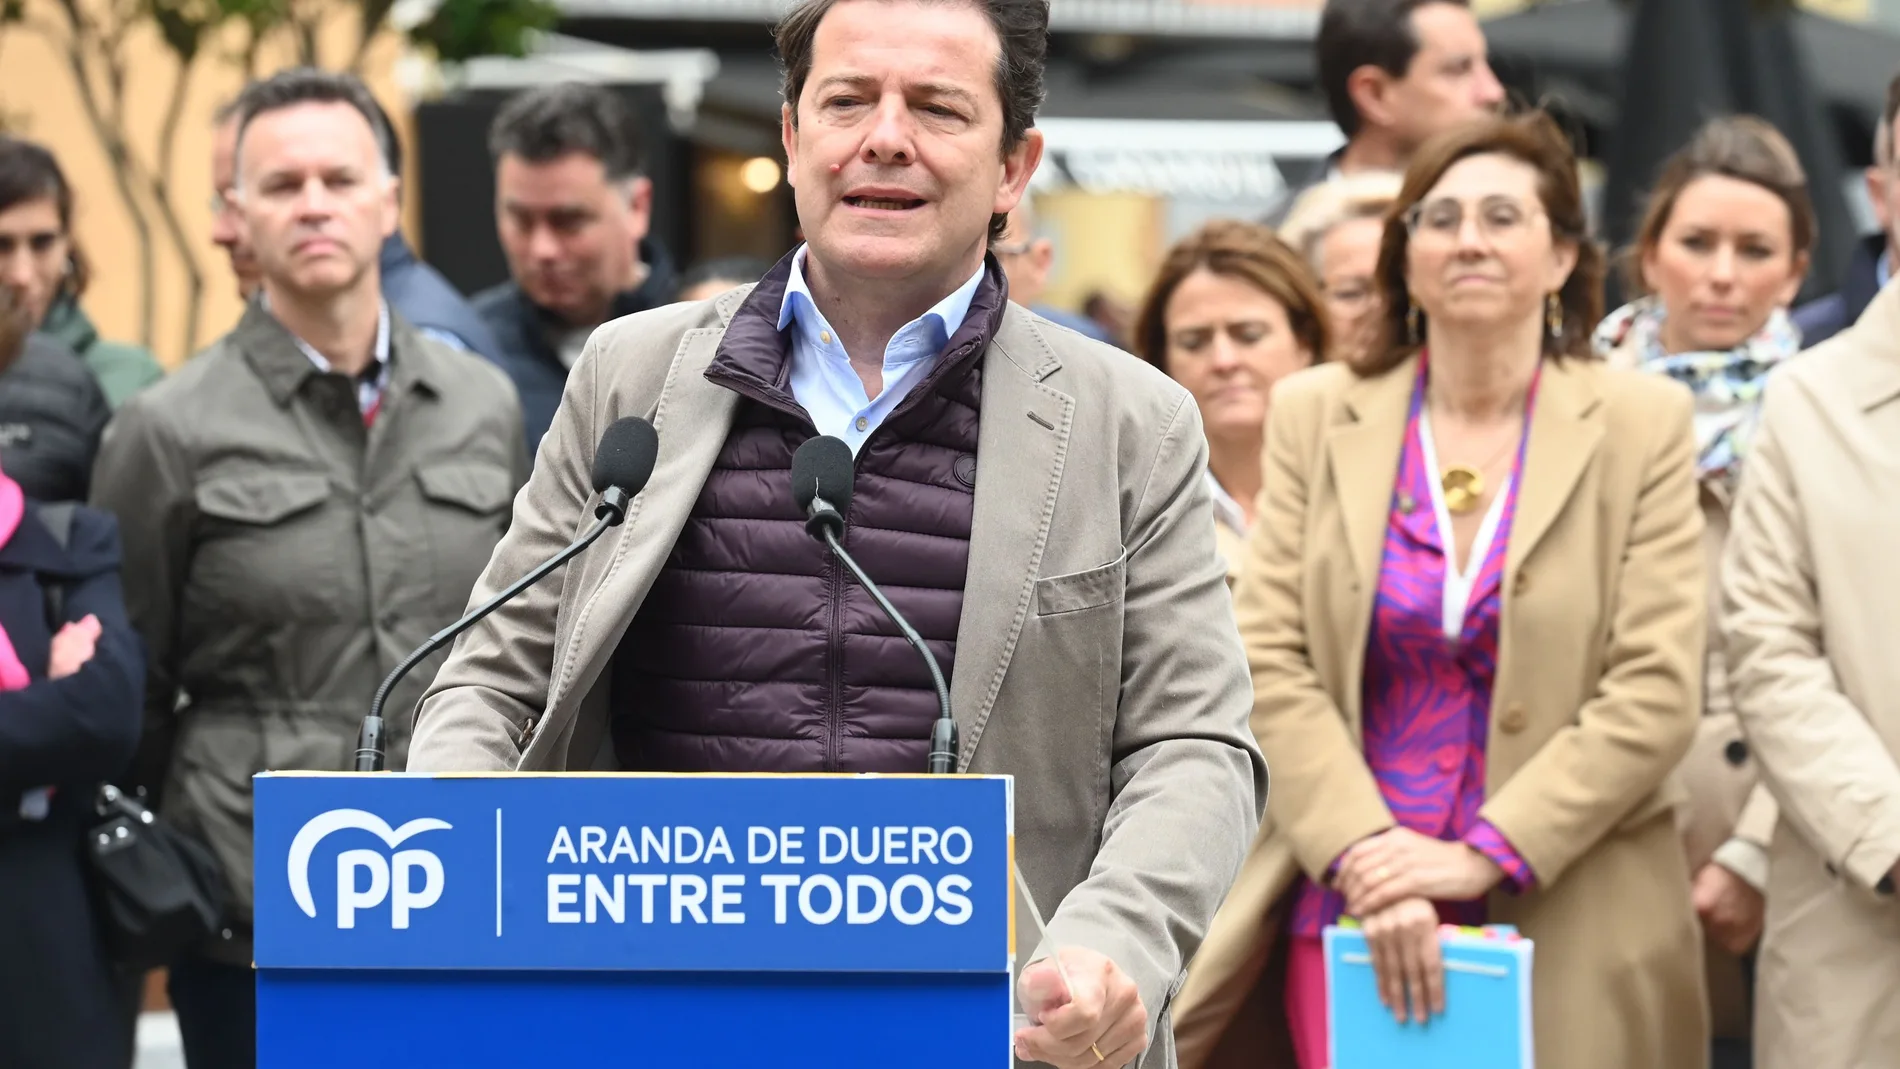 Mañueco interviene en este último día de campaña en Aranda de Duero